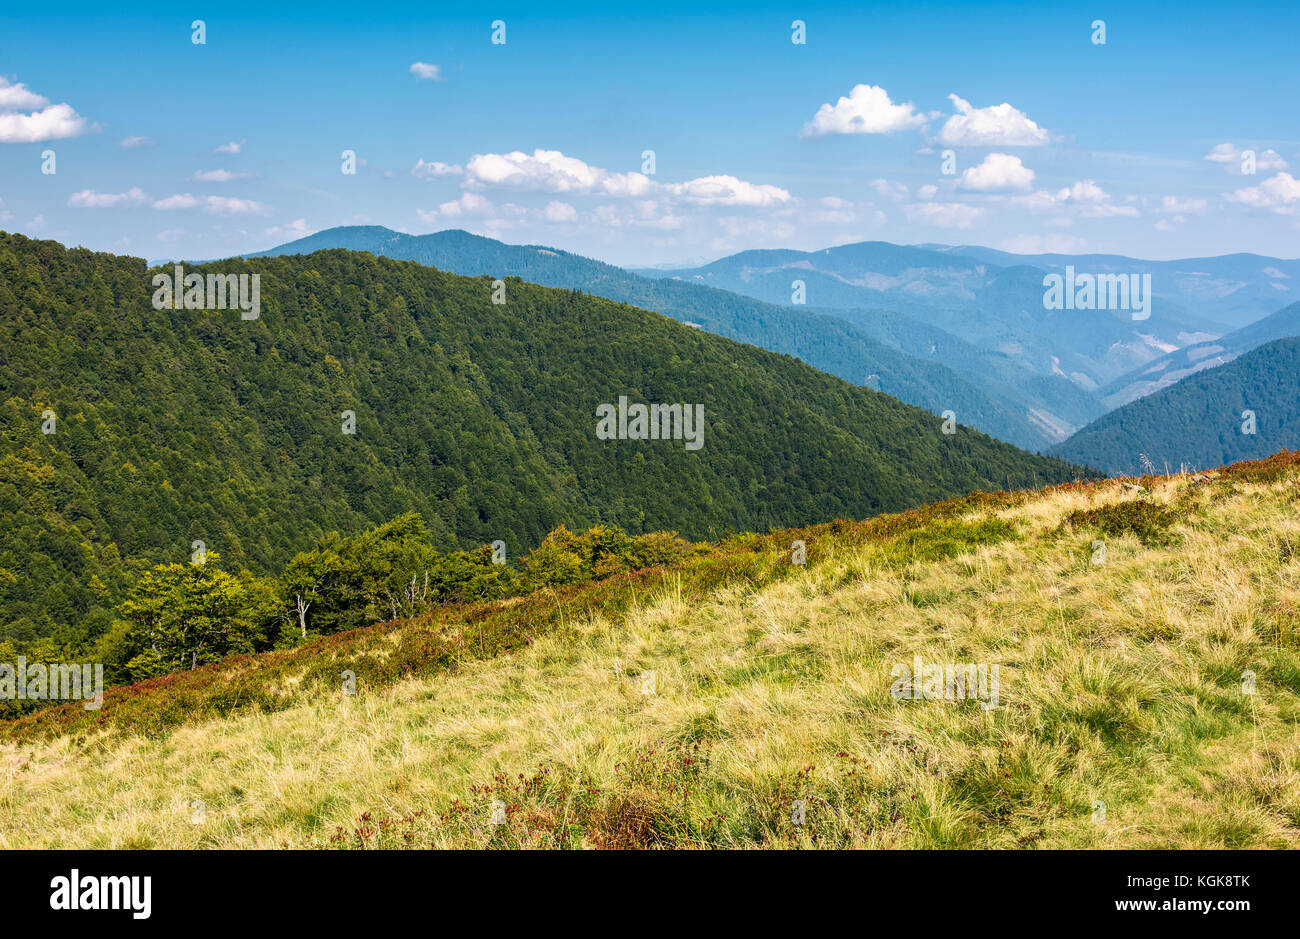 Precioso paisaje montañoso en verano. paisaje con colinas boscosas y pastizal bajo el cielo azul con nubes esponjosas Foto de stock